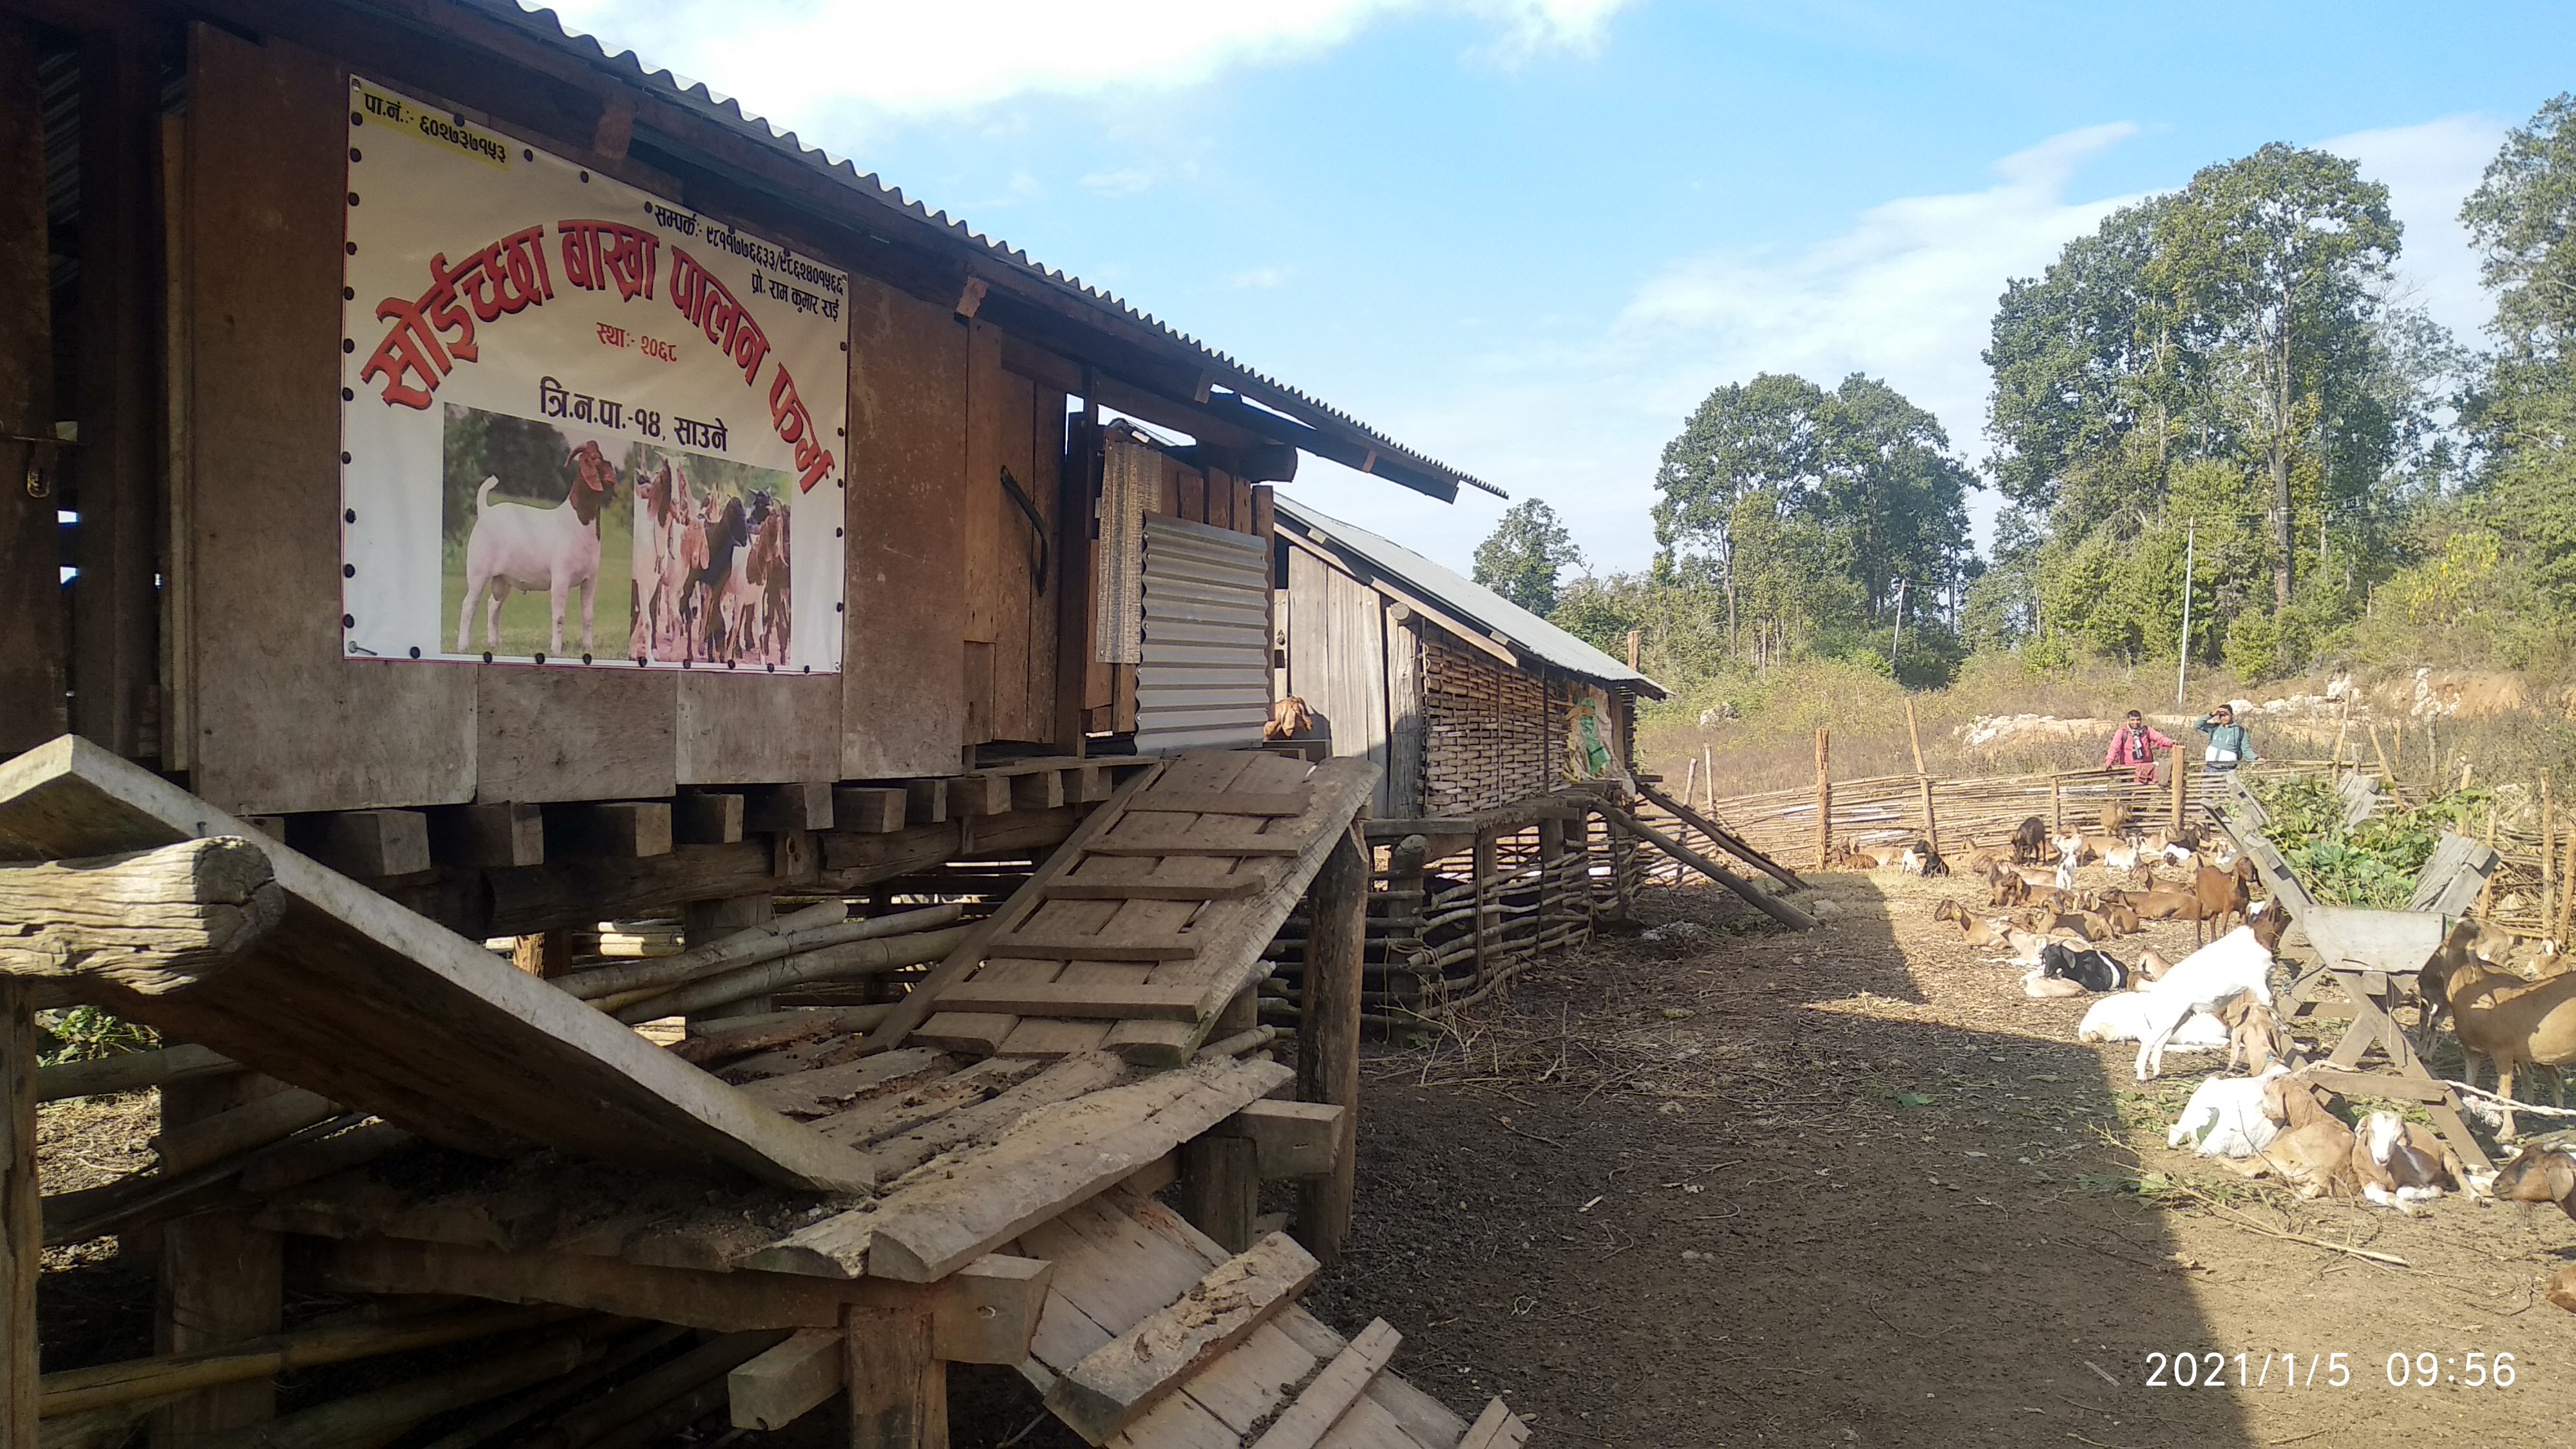 ग्रामिण उधम तथा विप्रेशन अायाेजना (समृद्दी) अापुर्ति श्रृखला वाख्रापालन कार्यक्रम